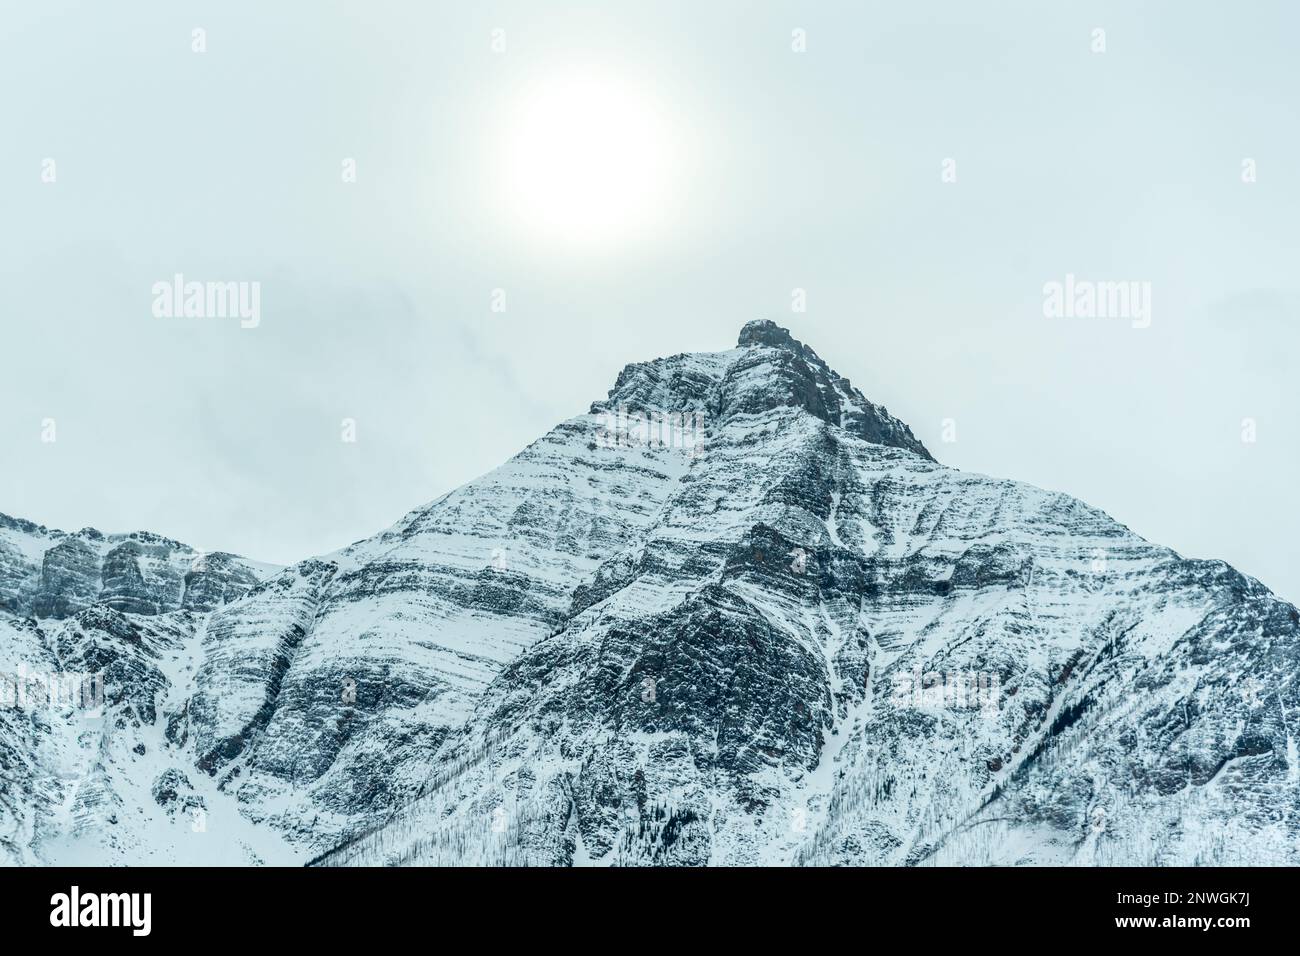 Im Winter bietet Alberta eine atemberaubende Aussicht auf die schneebedeckte Landschaft. Stockfoto